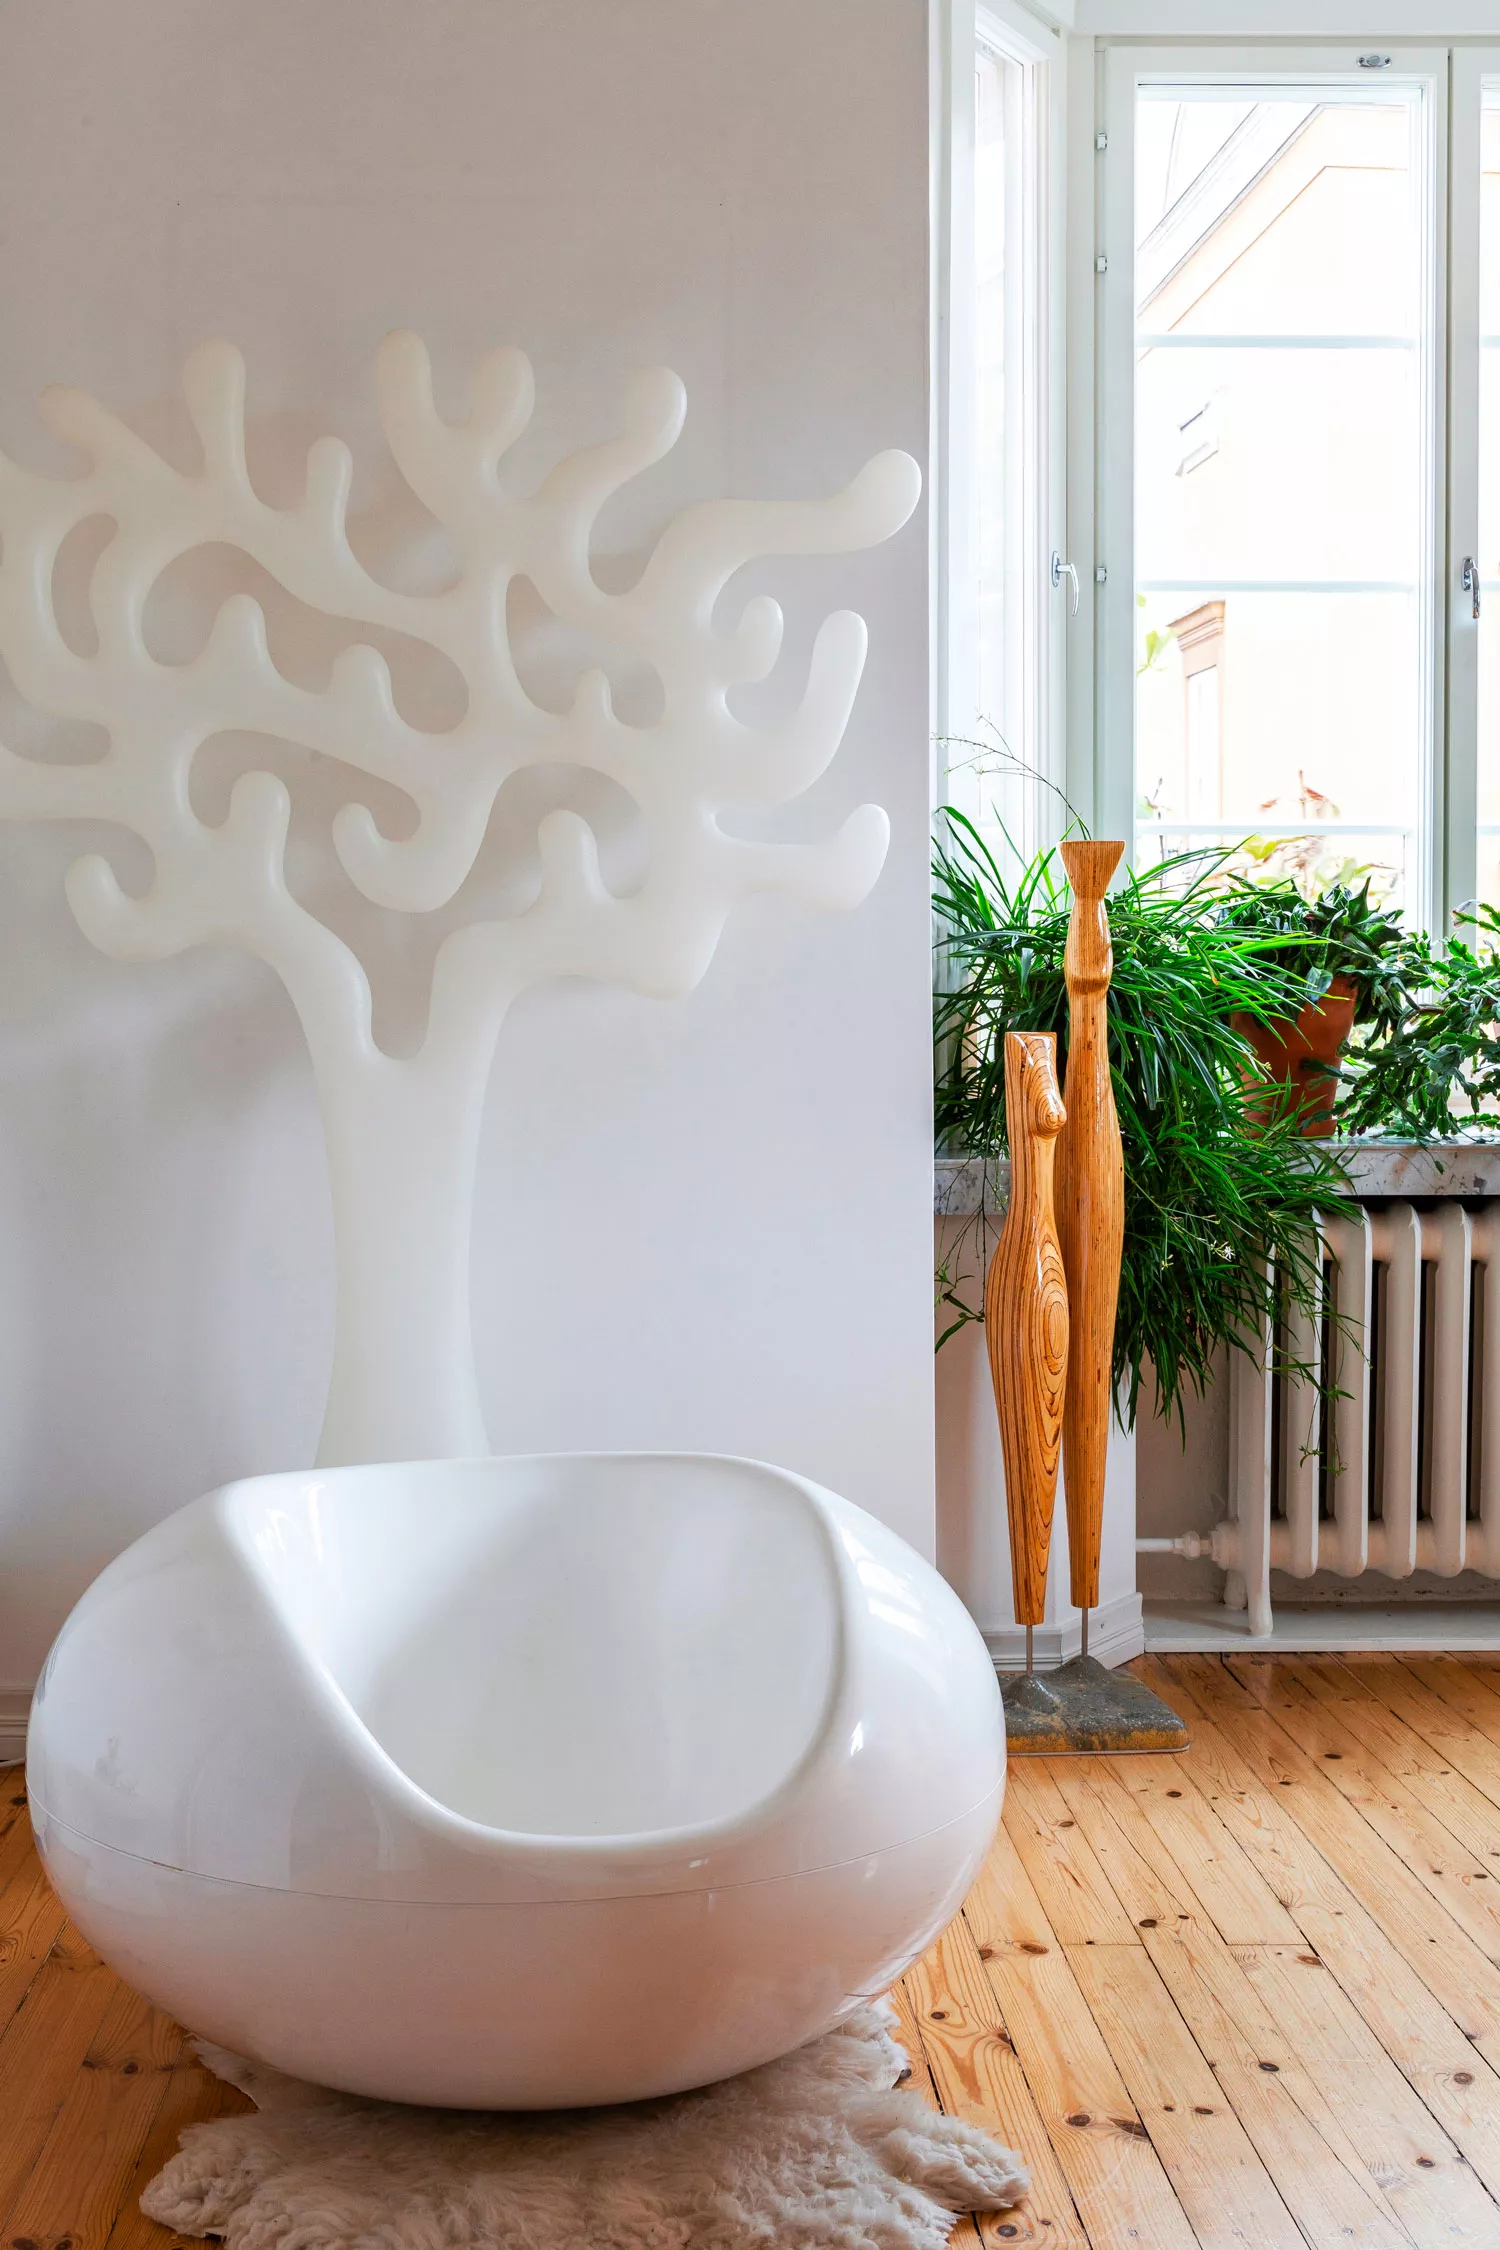 Virpi ihailee Eero Aarnion designia. Pastilli-tuoli ja tilanjakaja ovat kodin ainoat valkoiset kalusteet.